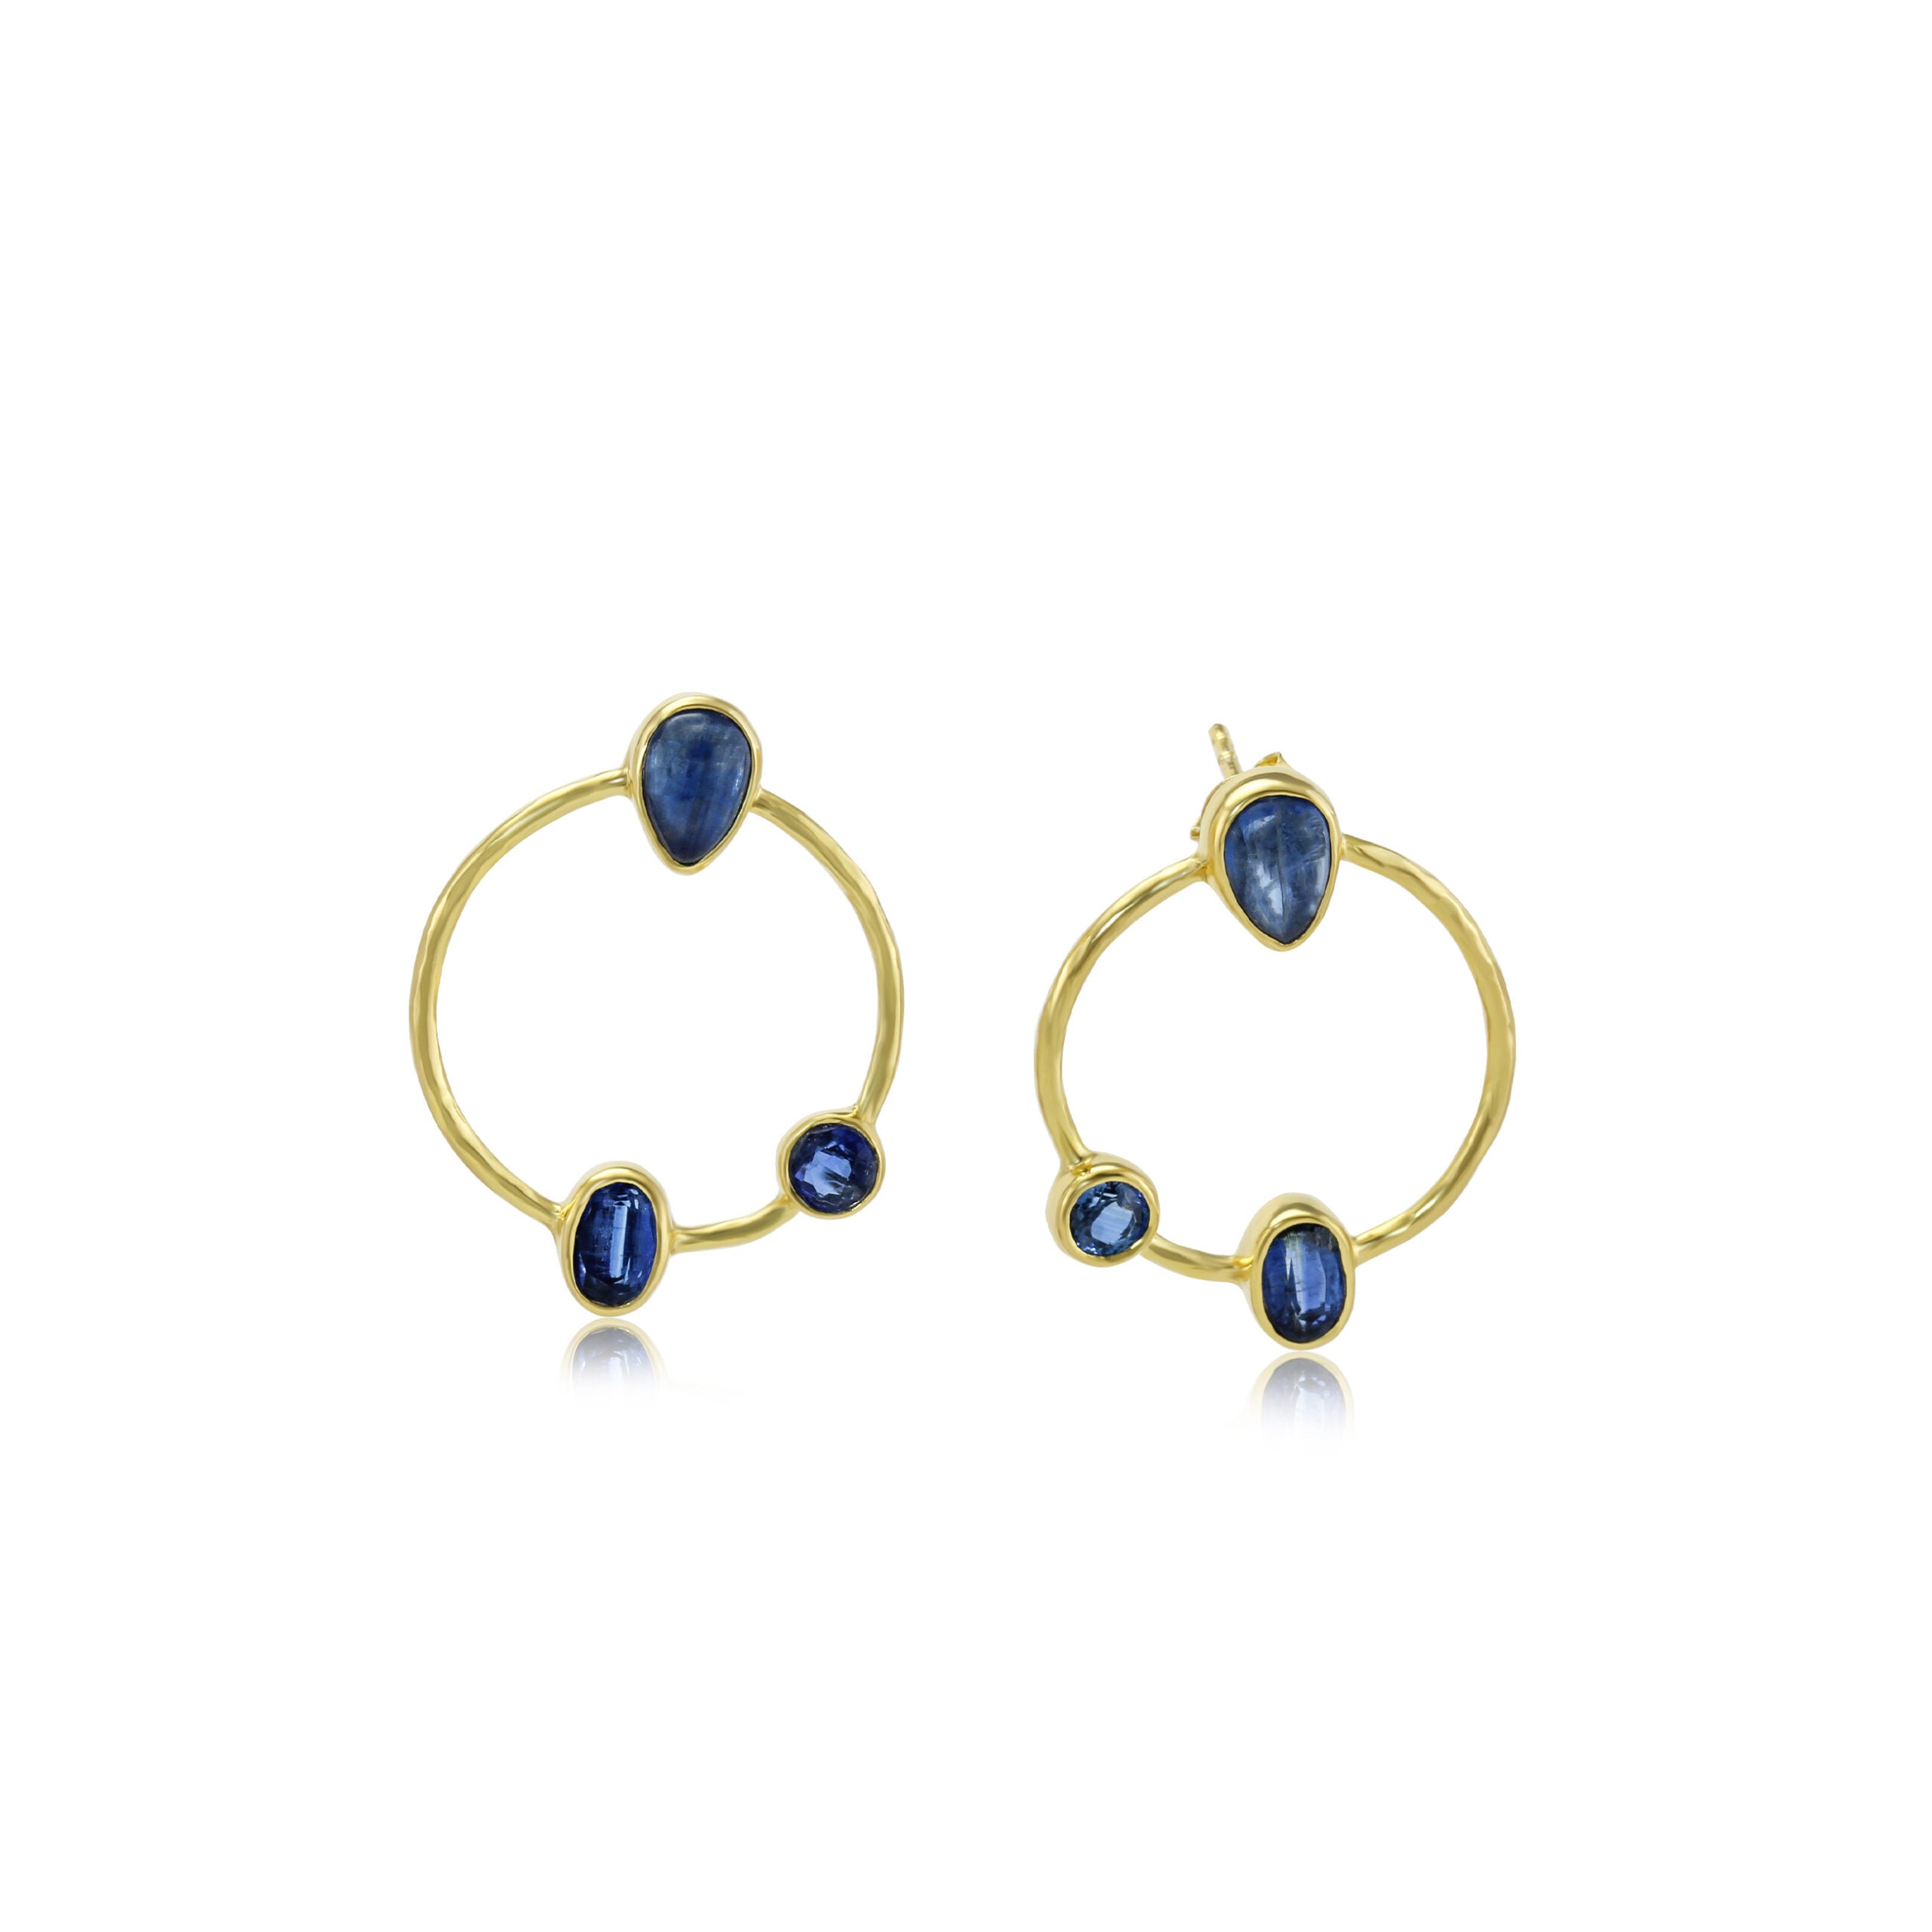 Gold Kyanite Hoop Earrings - The Nancy Smillie Shop - Art, Jewellery & Designer Gifts Glasgow